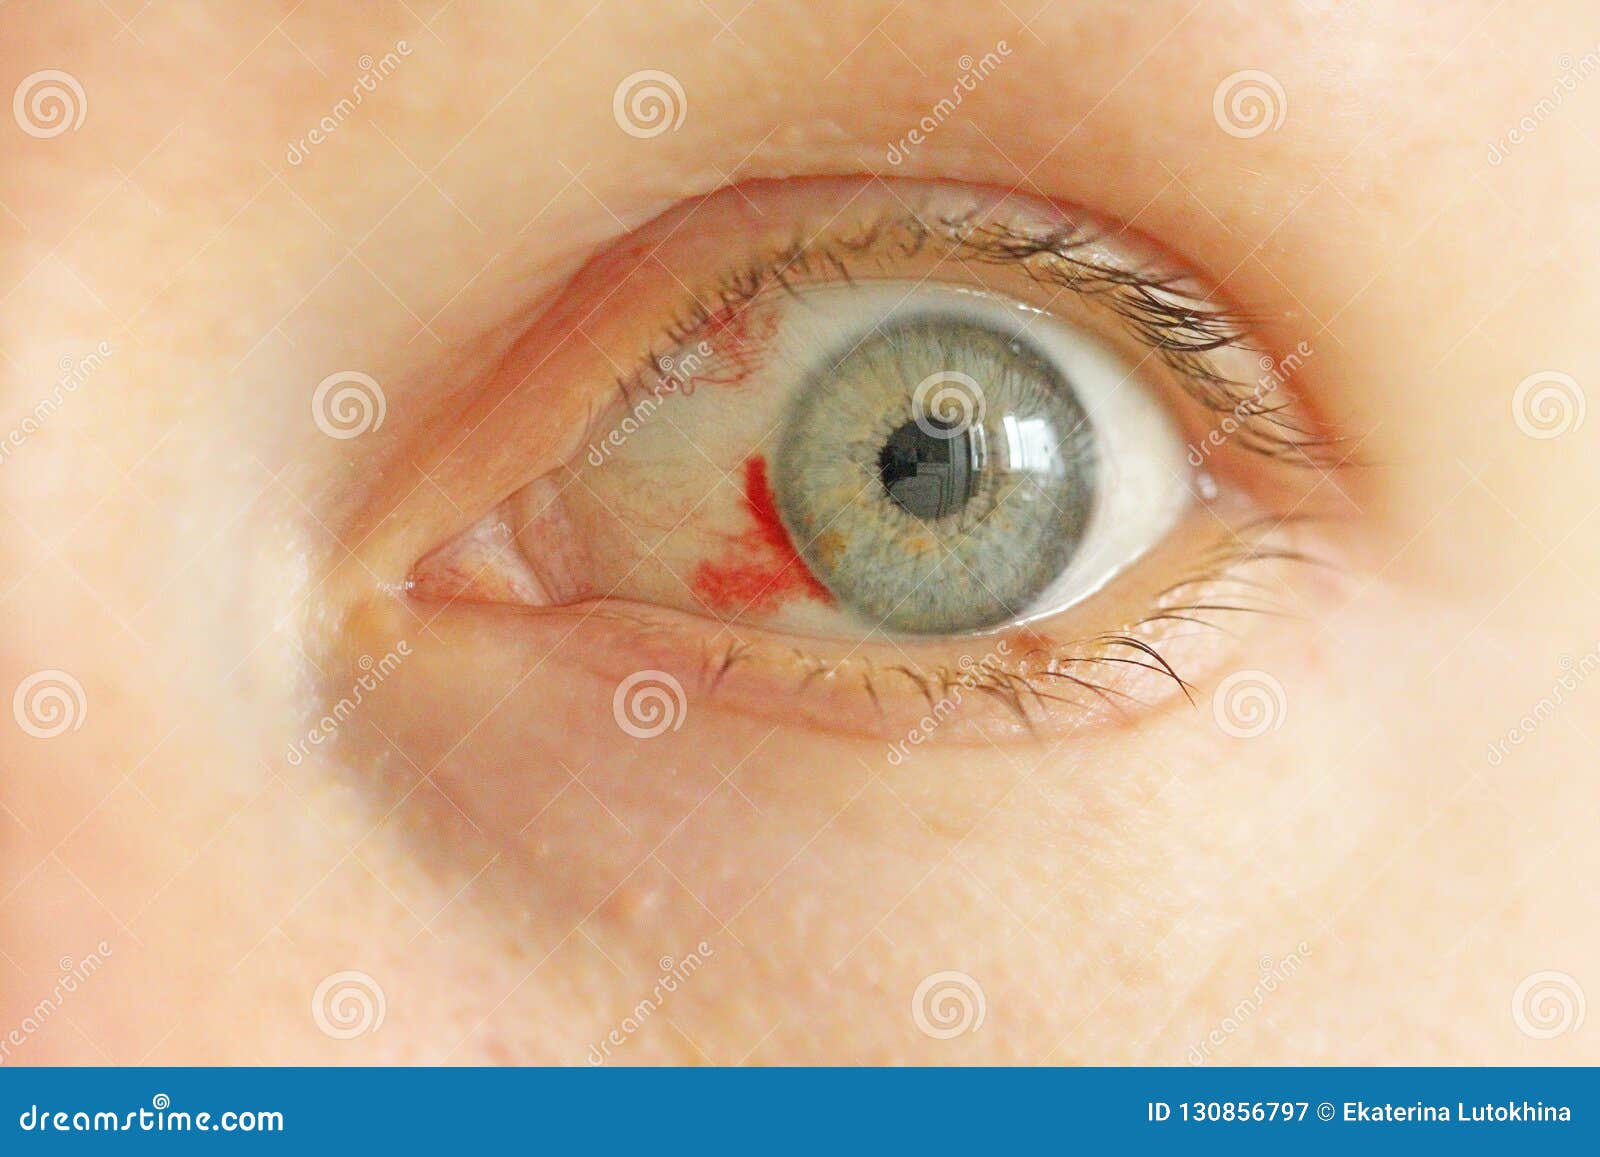 常见眼底疾病检查结果的秒懂解读_视网膜_彩照_天津